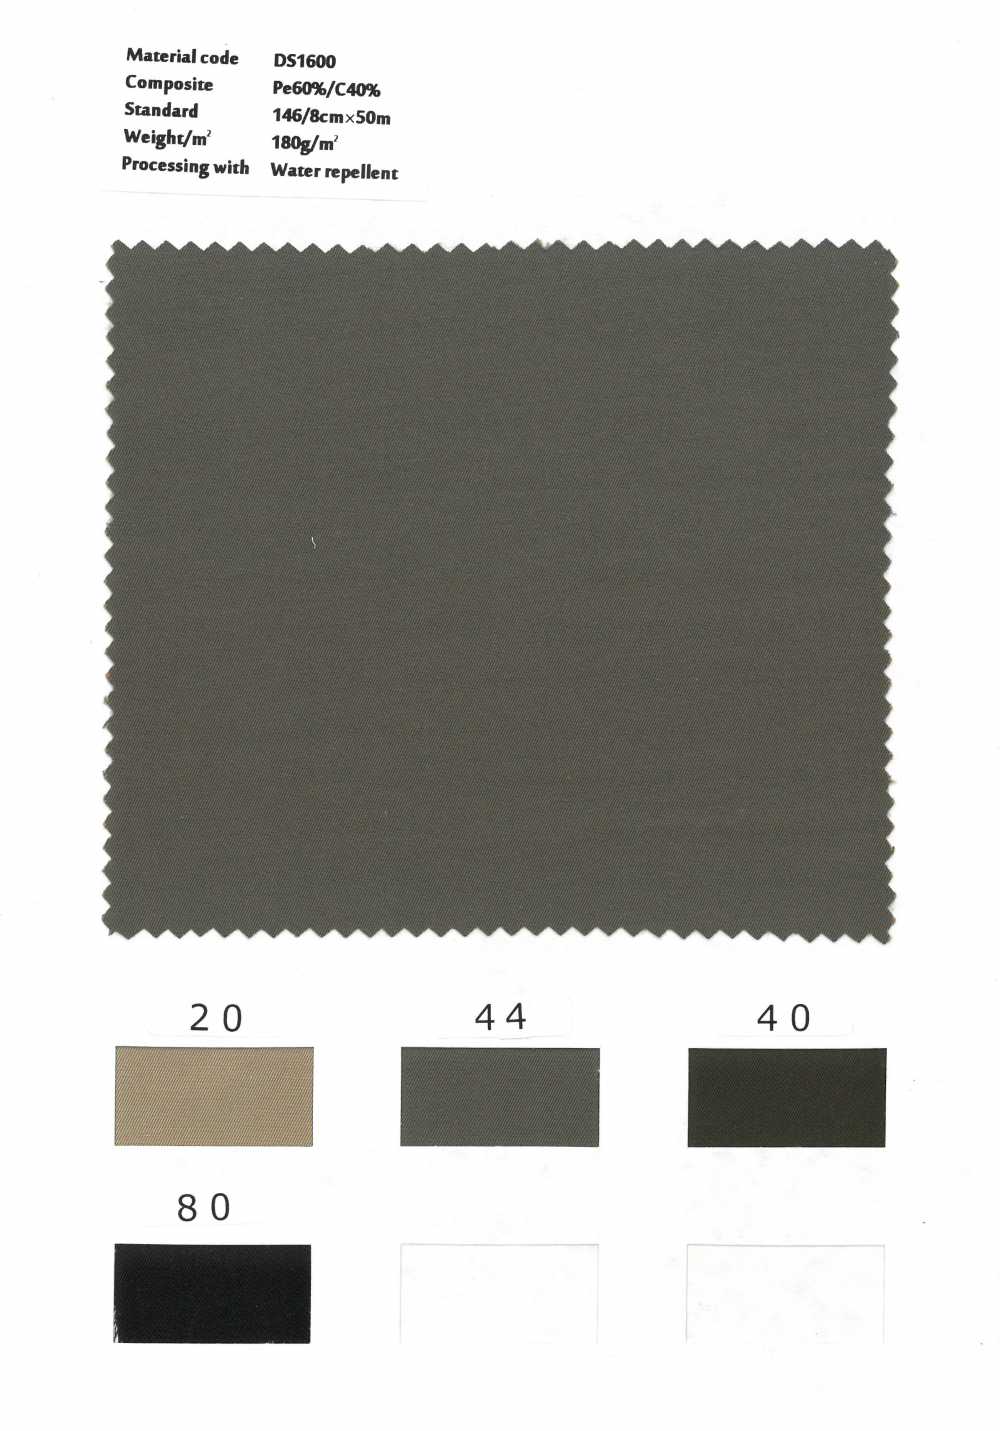 DS1600 Finition Hydrofuge En Gabardine Teint En Fil De Coton Polyester[Fabrication De Textile] Styletex